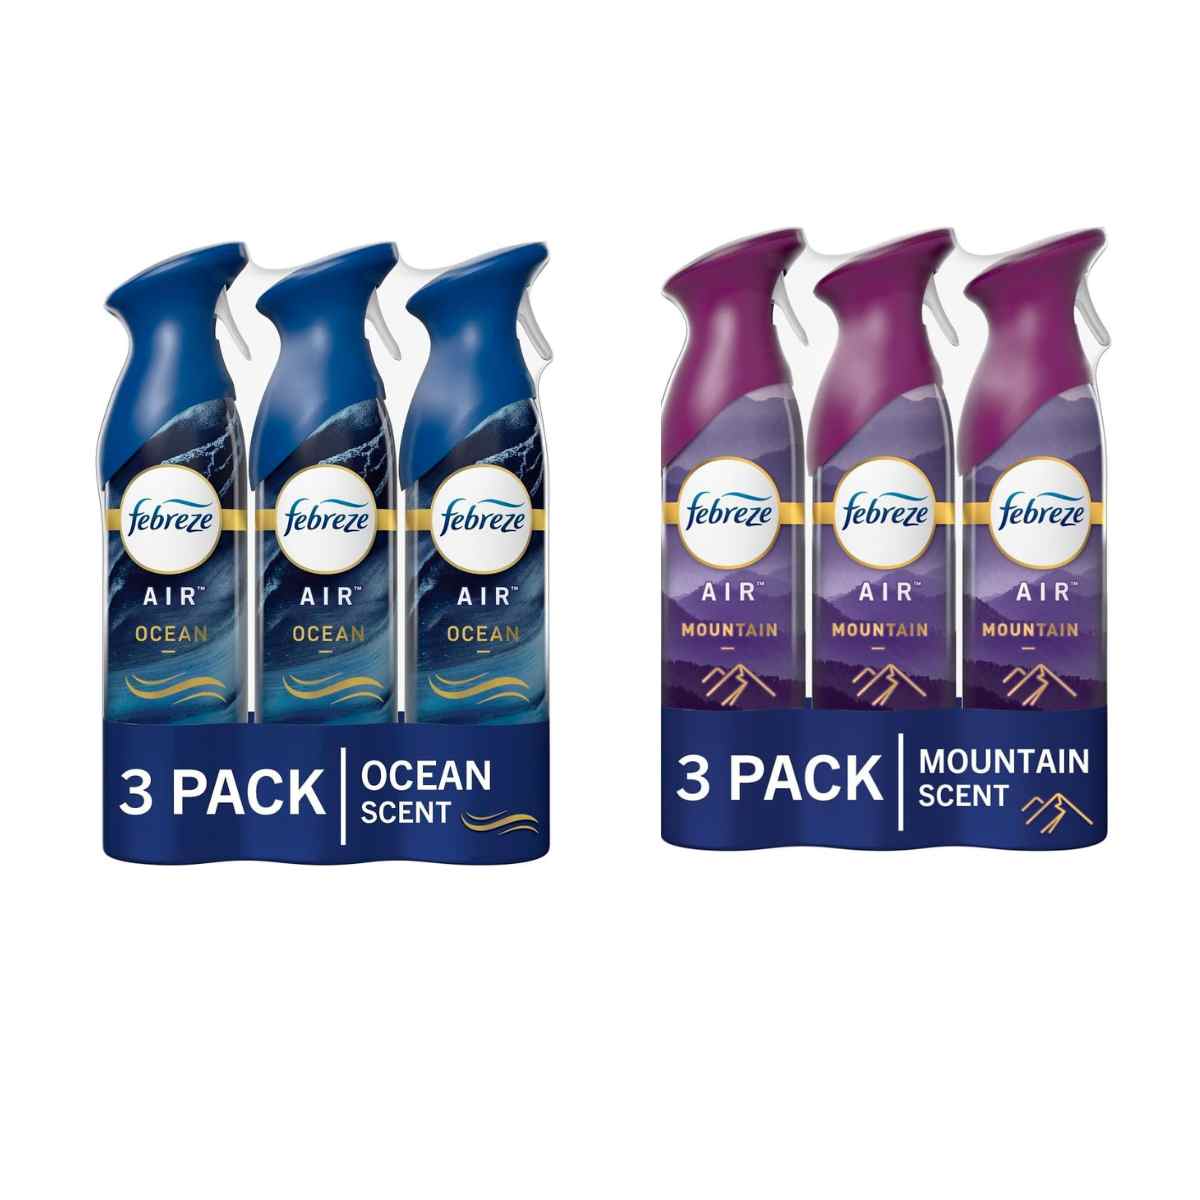 Febreze Air Air Refresher, Ocean, Value Pack - 2 pack, 8.8 oz bottles